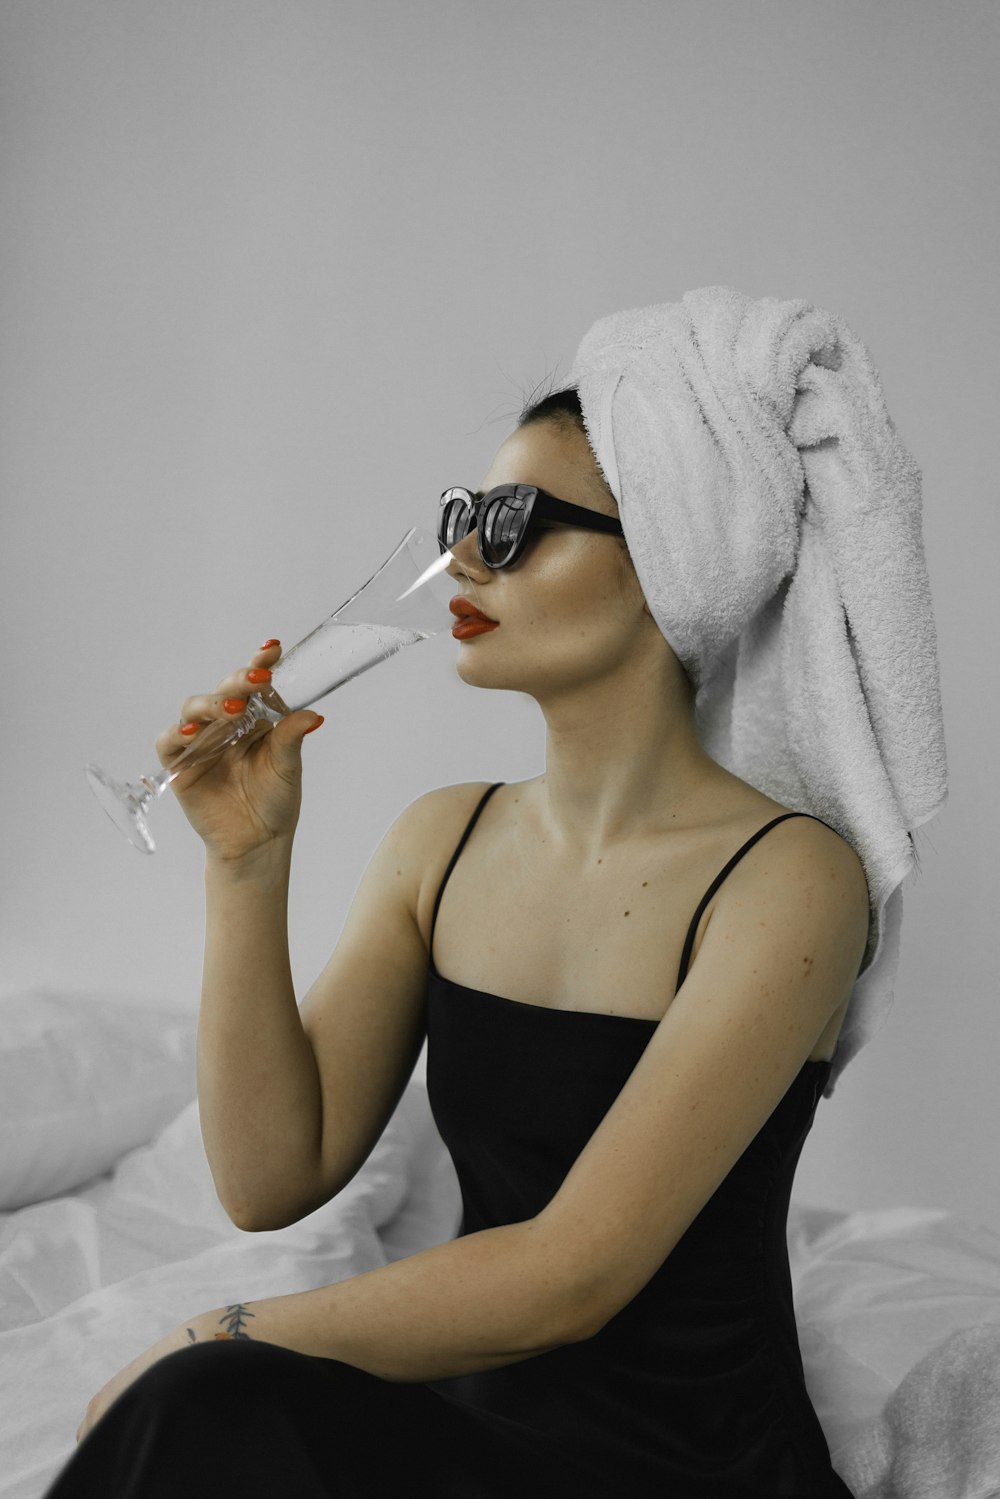 Eine Frau mit einem Handtuch auf dem Kopf, die ein Glas Wein trinkt